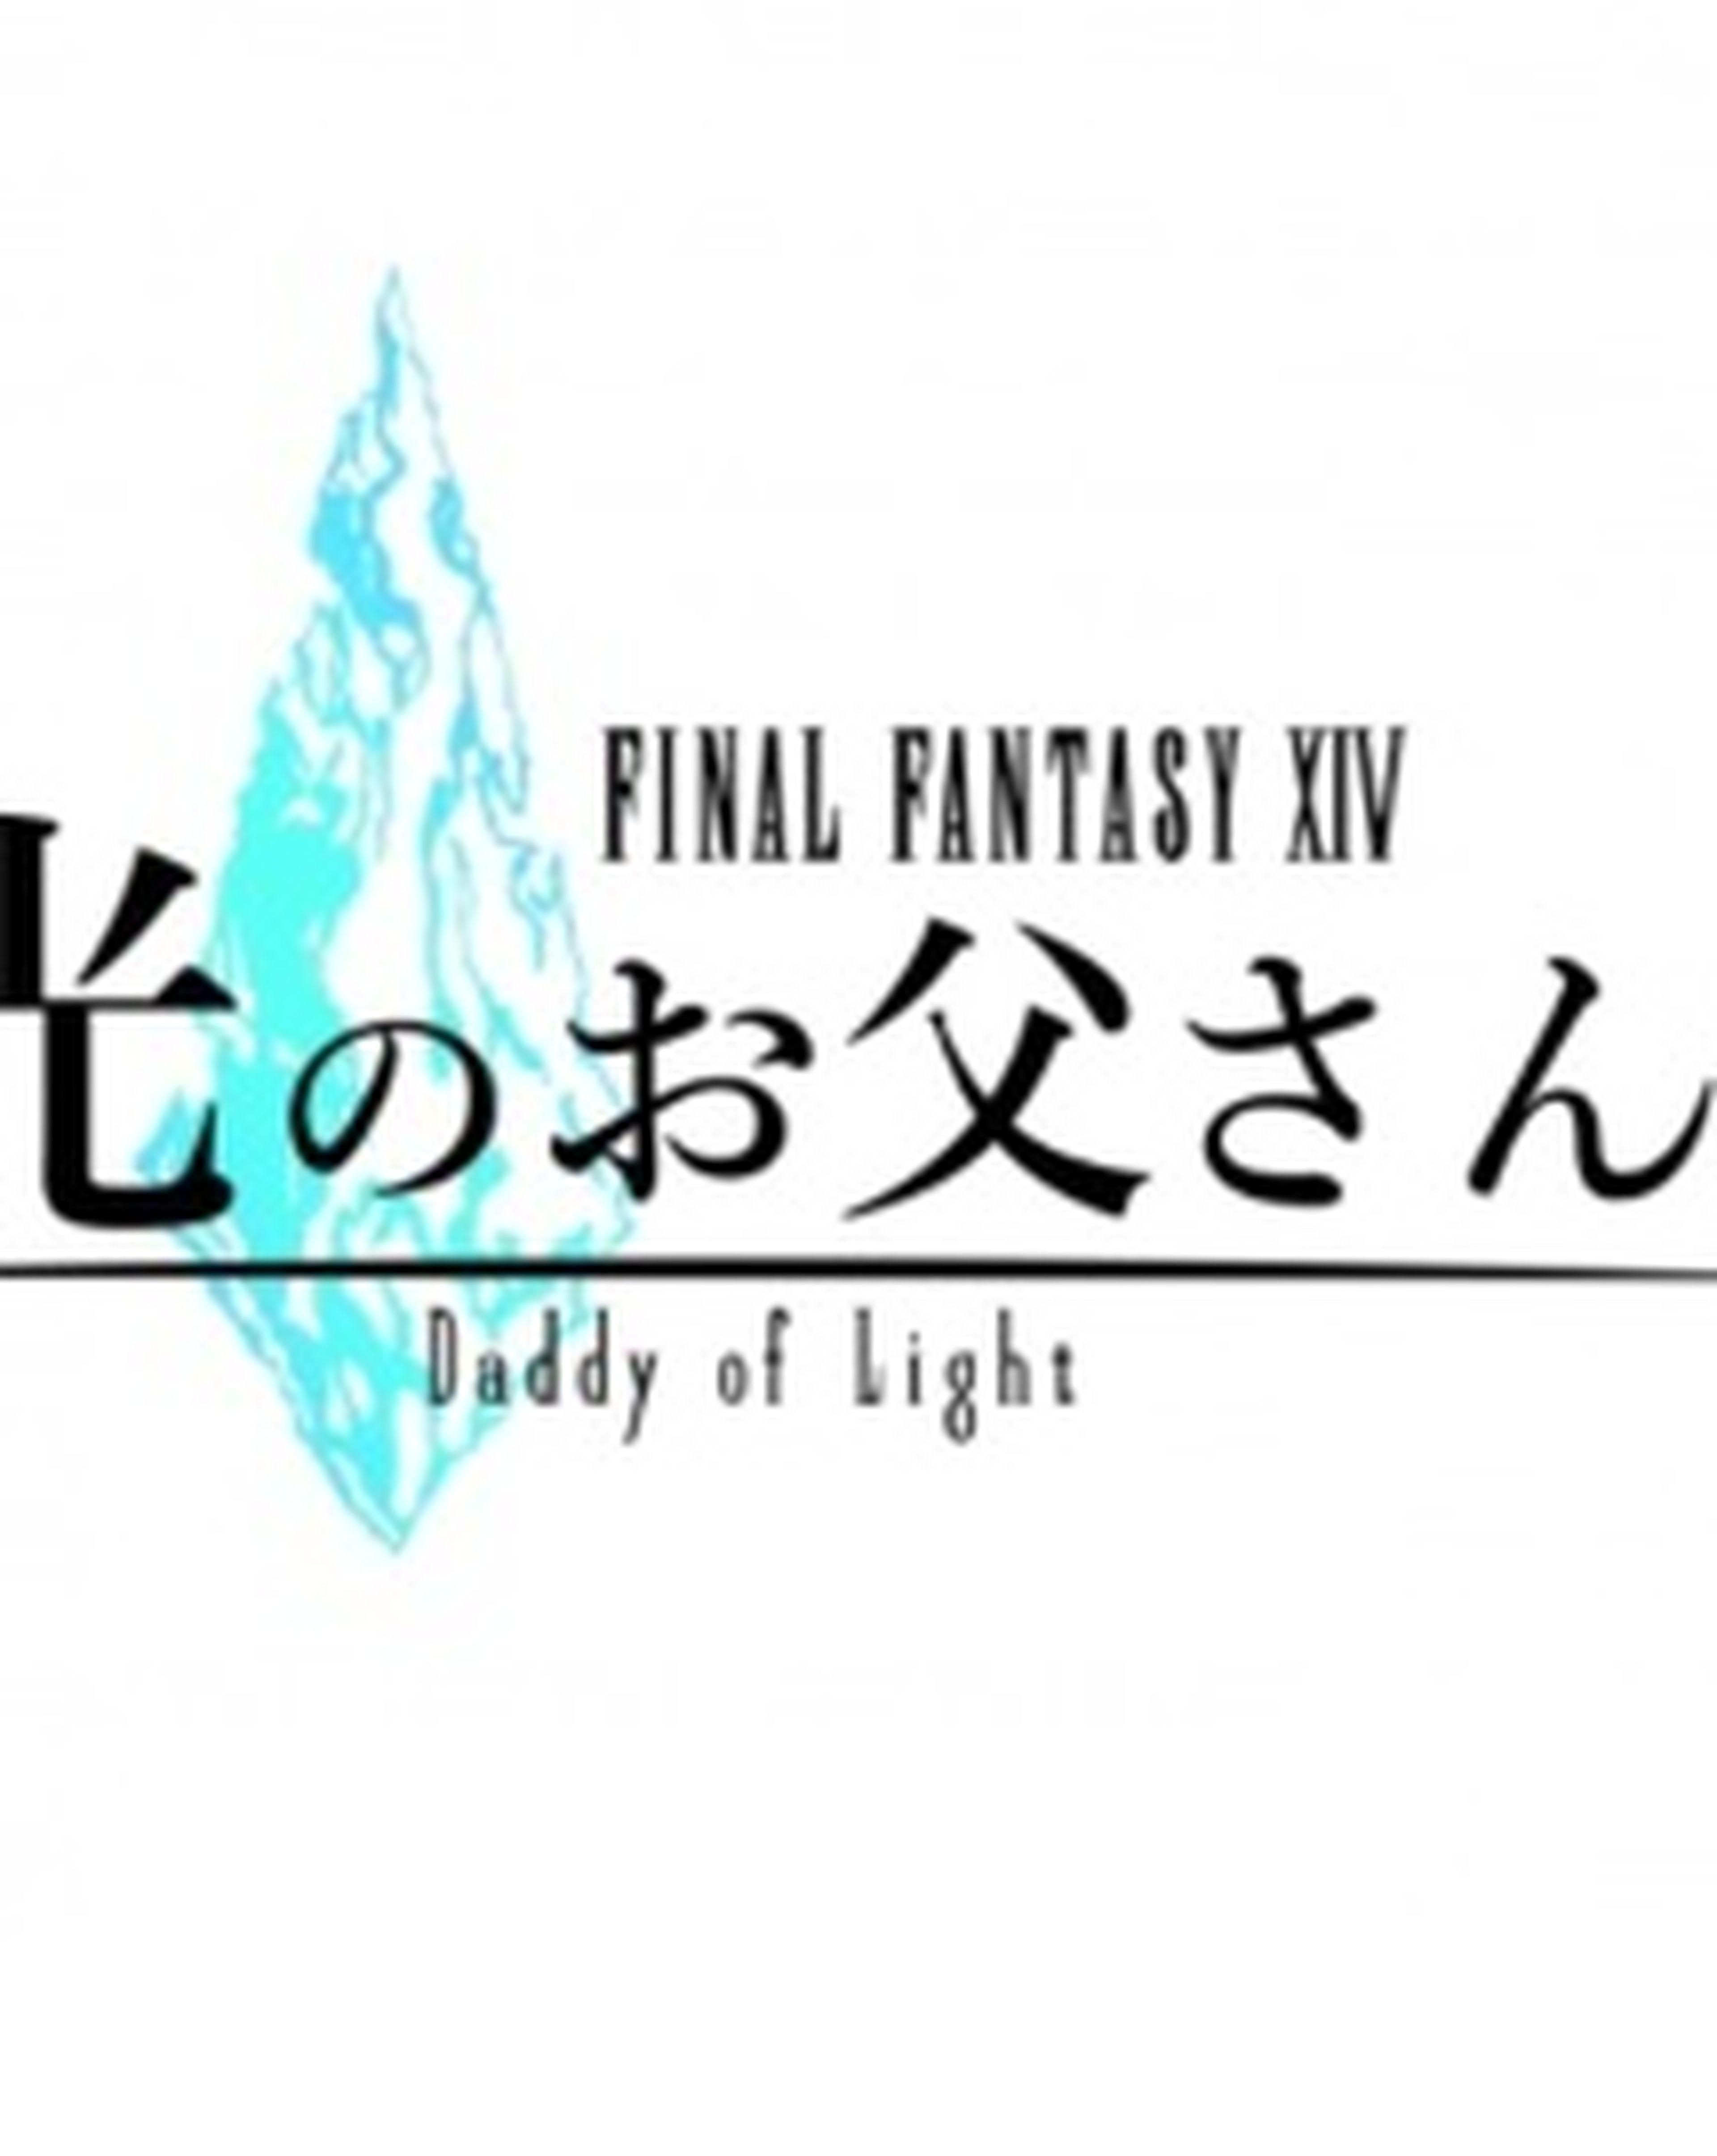 FF XIV Daddy of Light